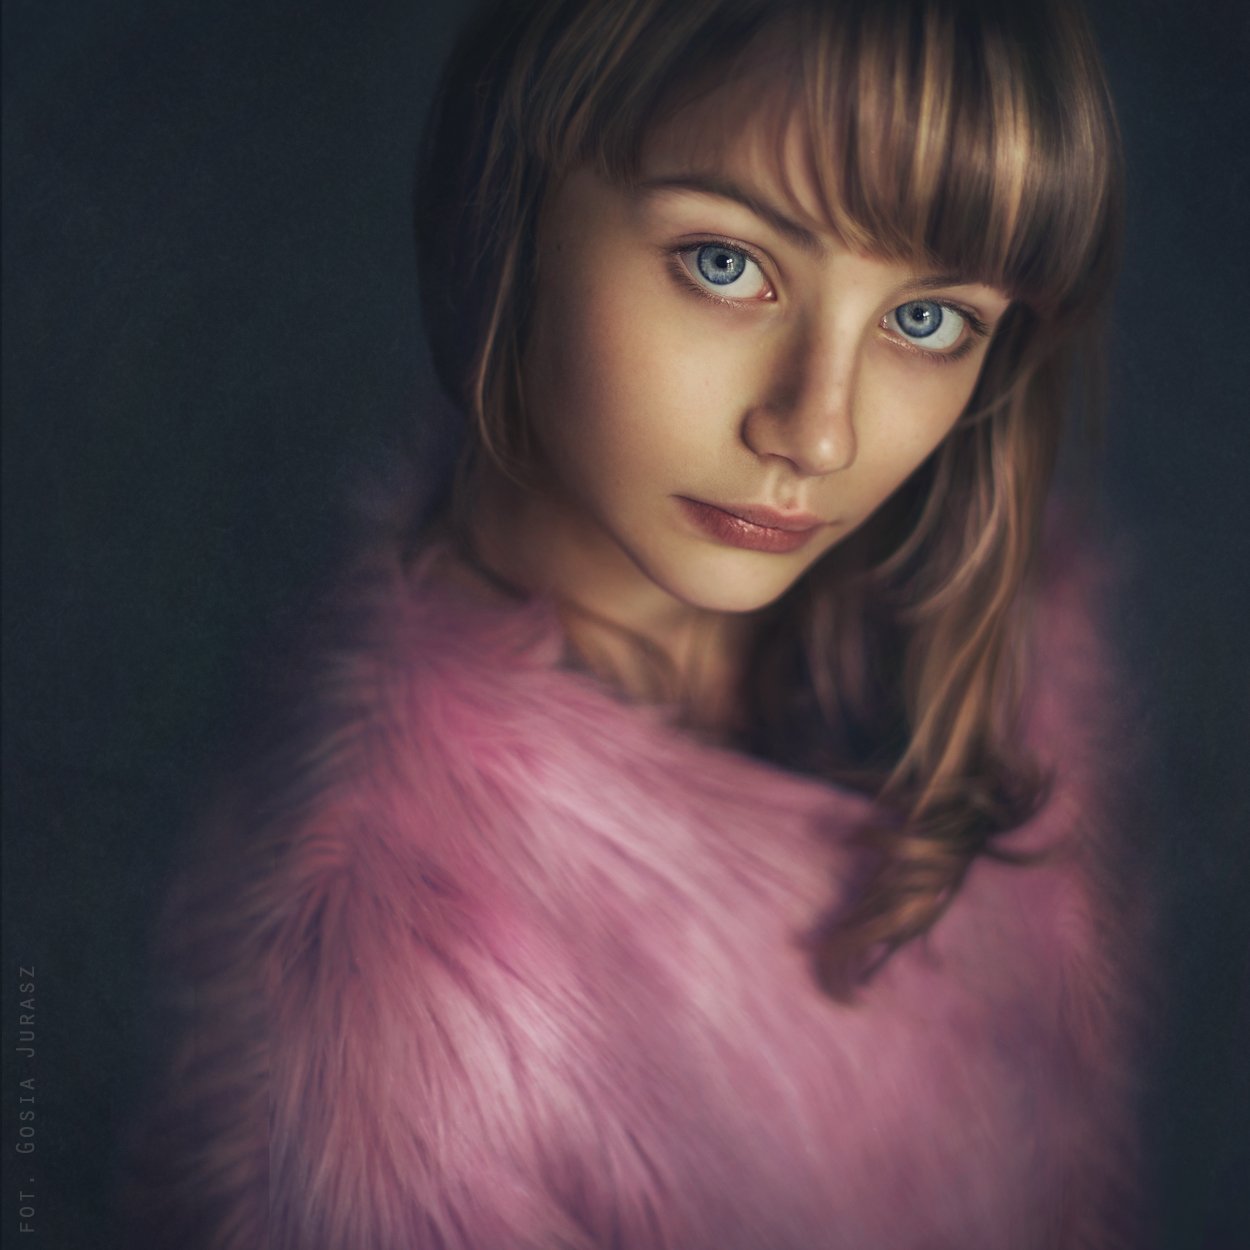 35photo, portrait, gosiajurasz, girl, portret, девушка, портрет, Gosia Jurasz